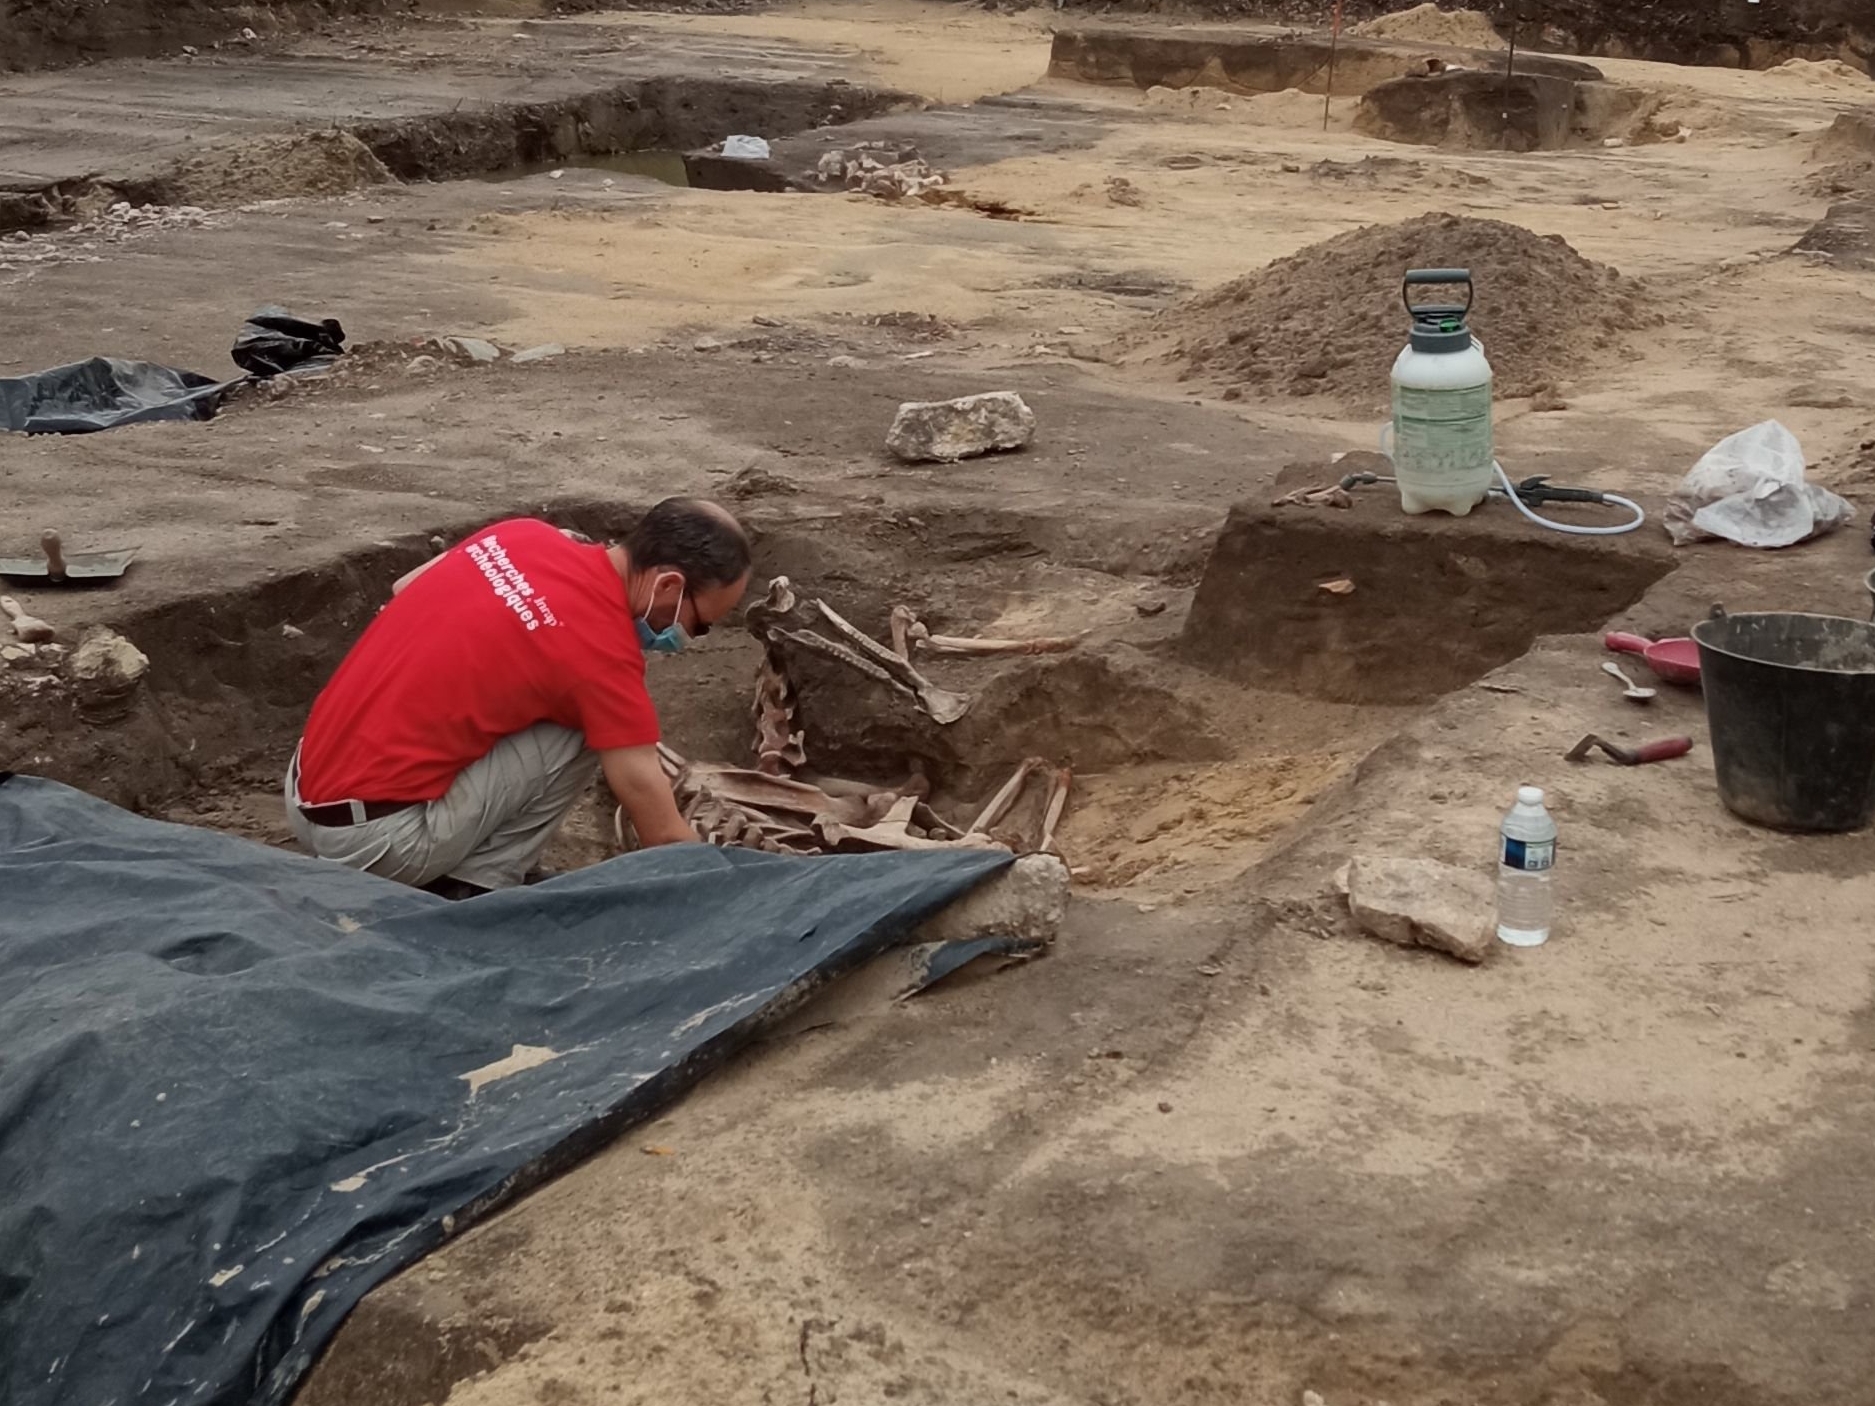 Chelles (Seine-et-Marne), le 26 mai 2021. Les archéologues de l'Inrap ont découvert environ 2600 objets datant de la préhistoire jusqu'au XIXe siècle, dans le sous-sol de l'emplacement d'un futur puits d'accès à la ligne 16 du Grand Paris Express. /Alexandra Elatré